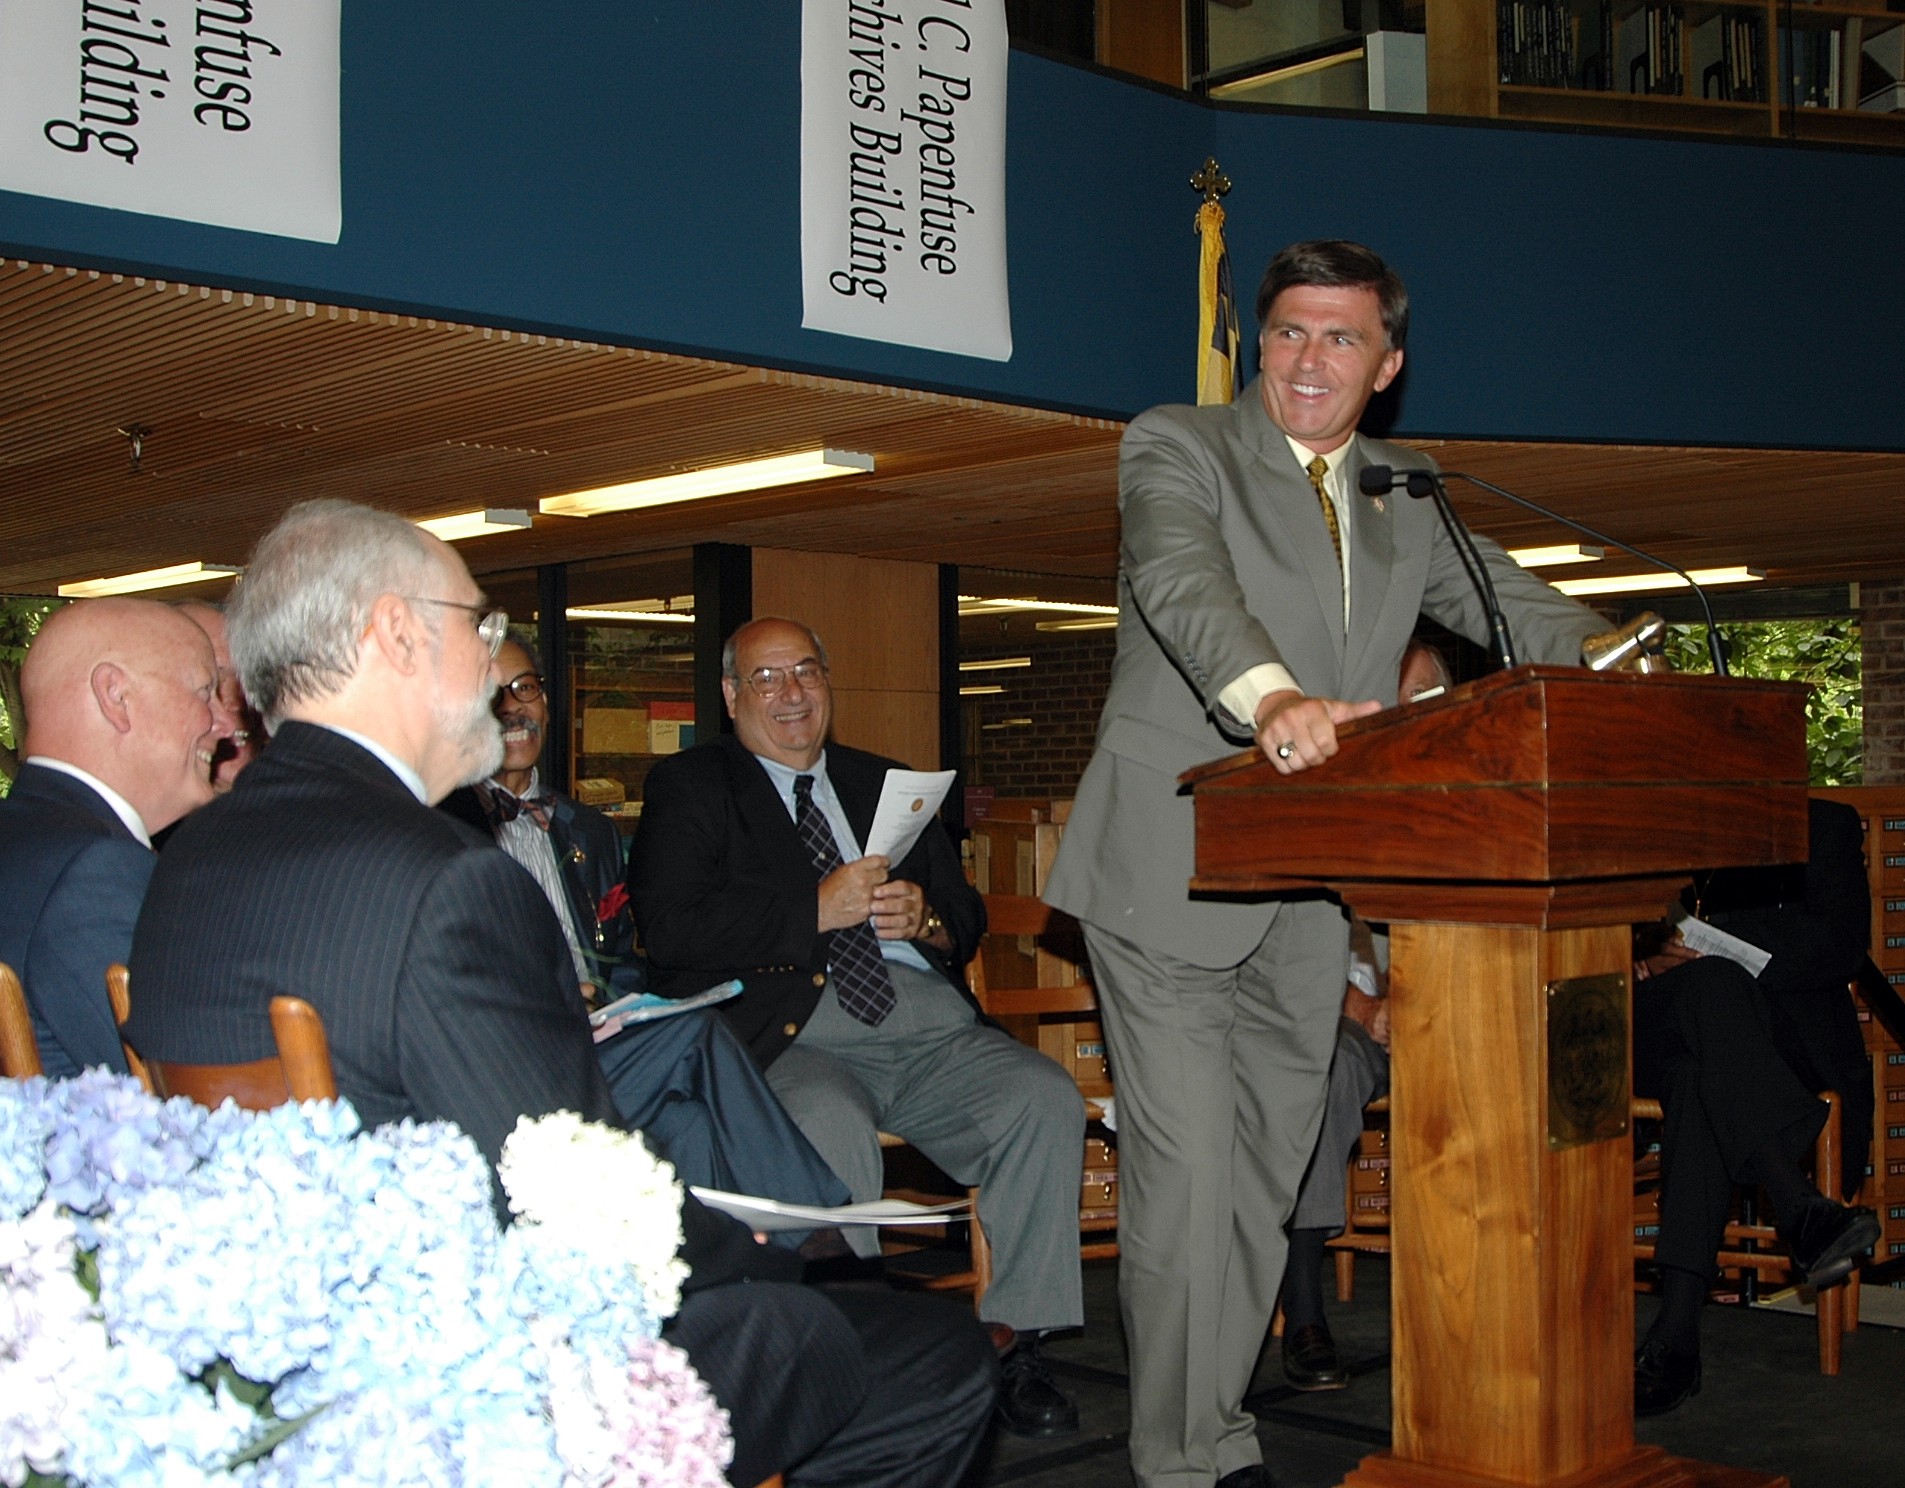 Governor Ehrlich speaking